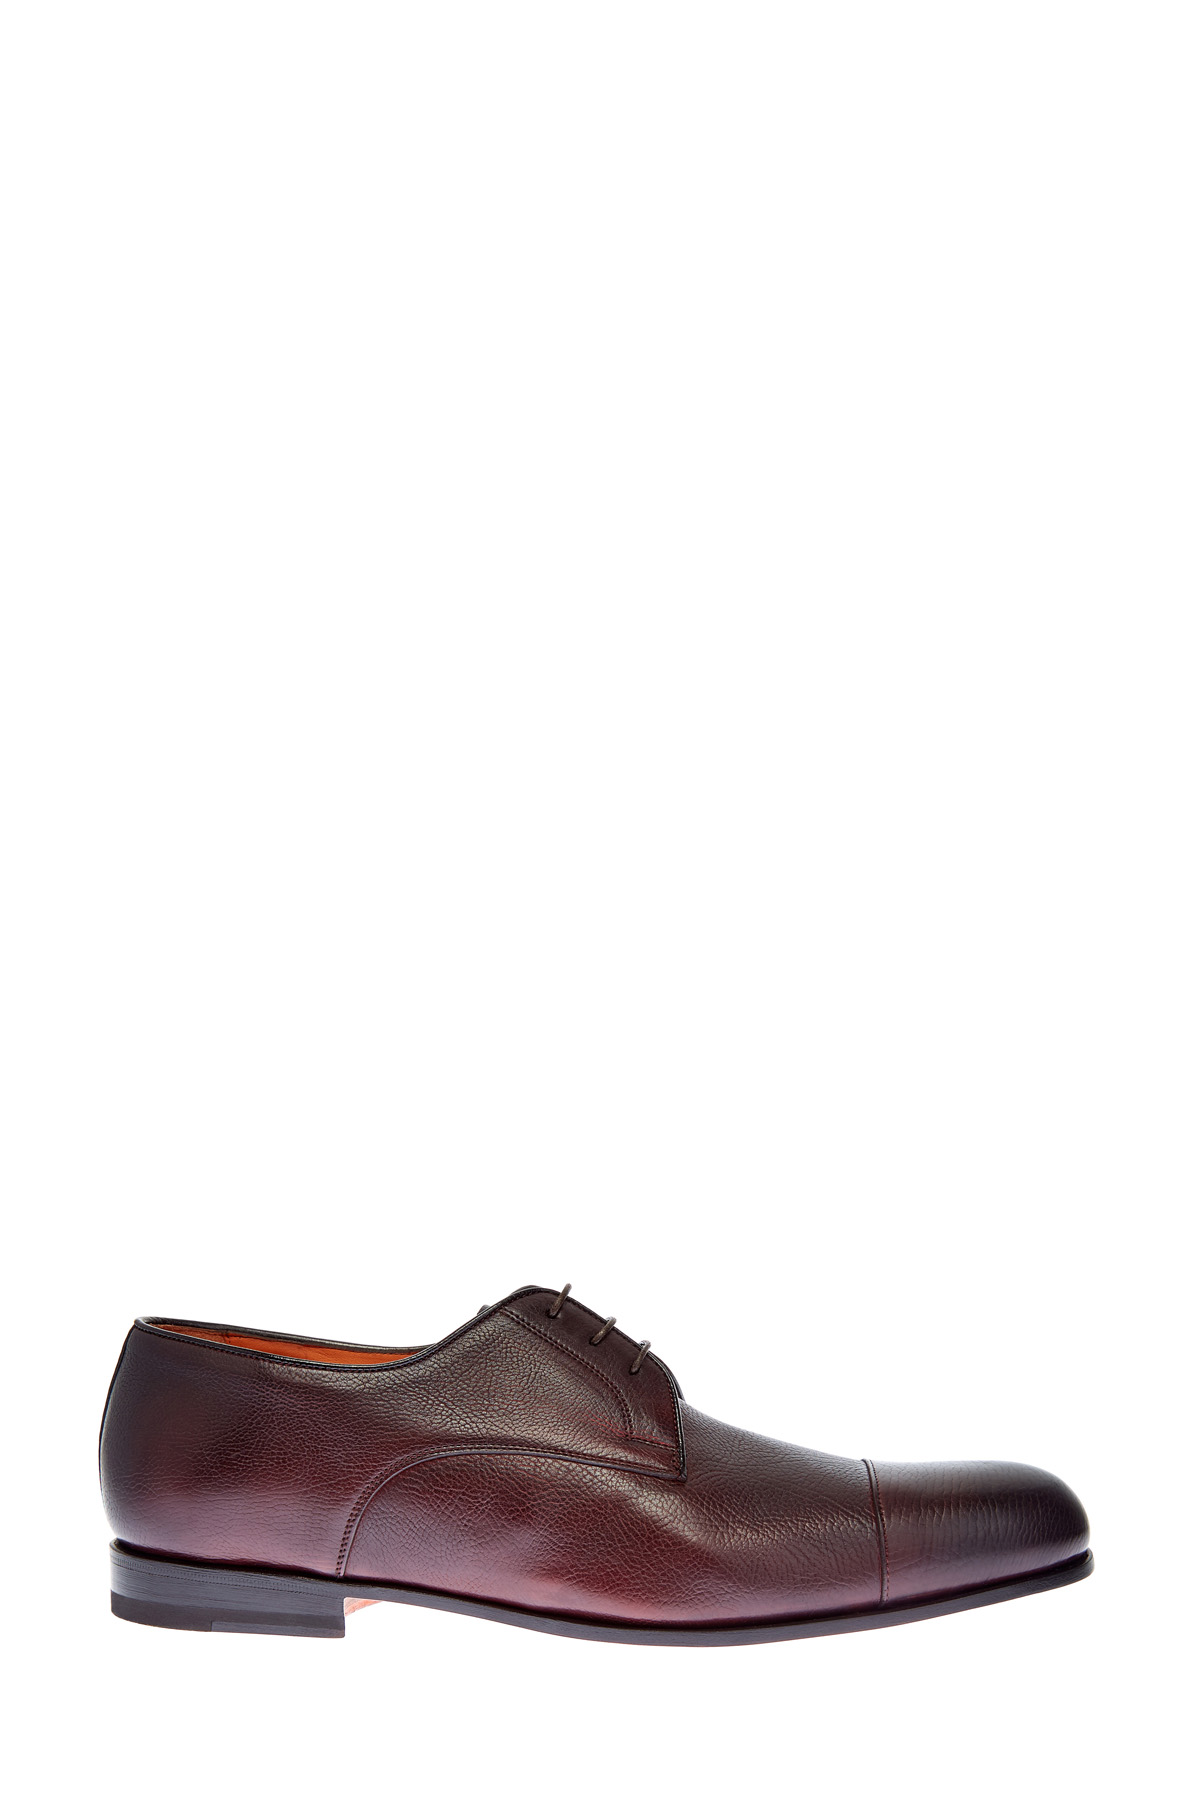 Туфли-дерби ручной работы из крупнозернистой кожи SANTONI, цвет коричневый, размер 44;40.5;41.5